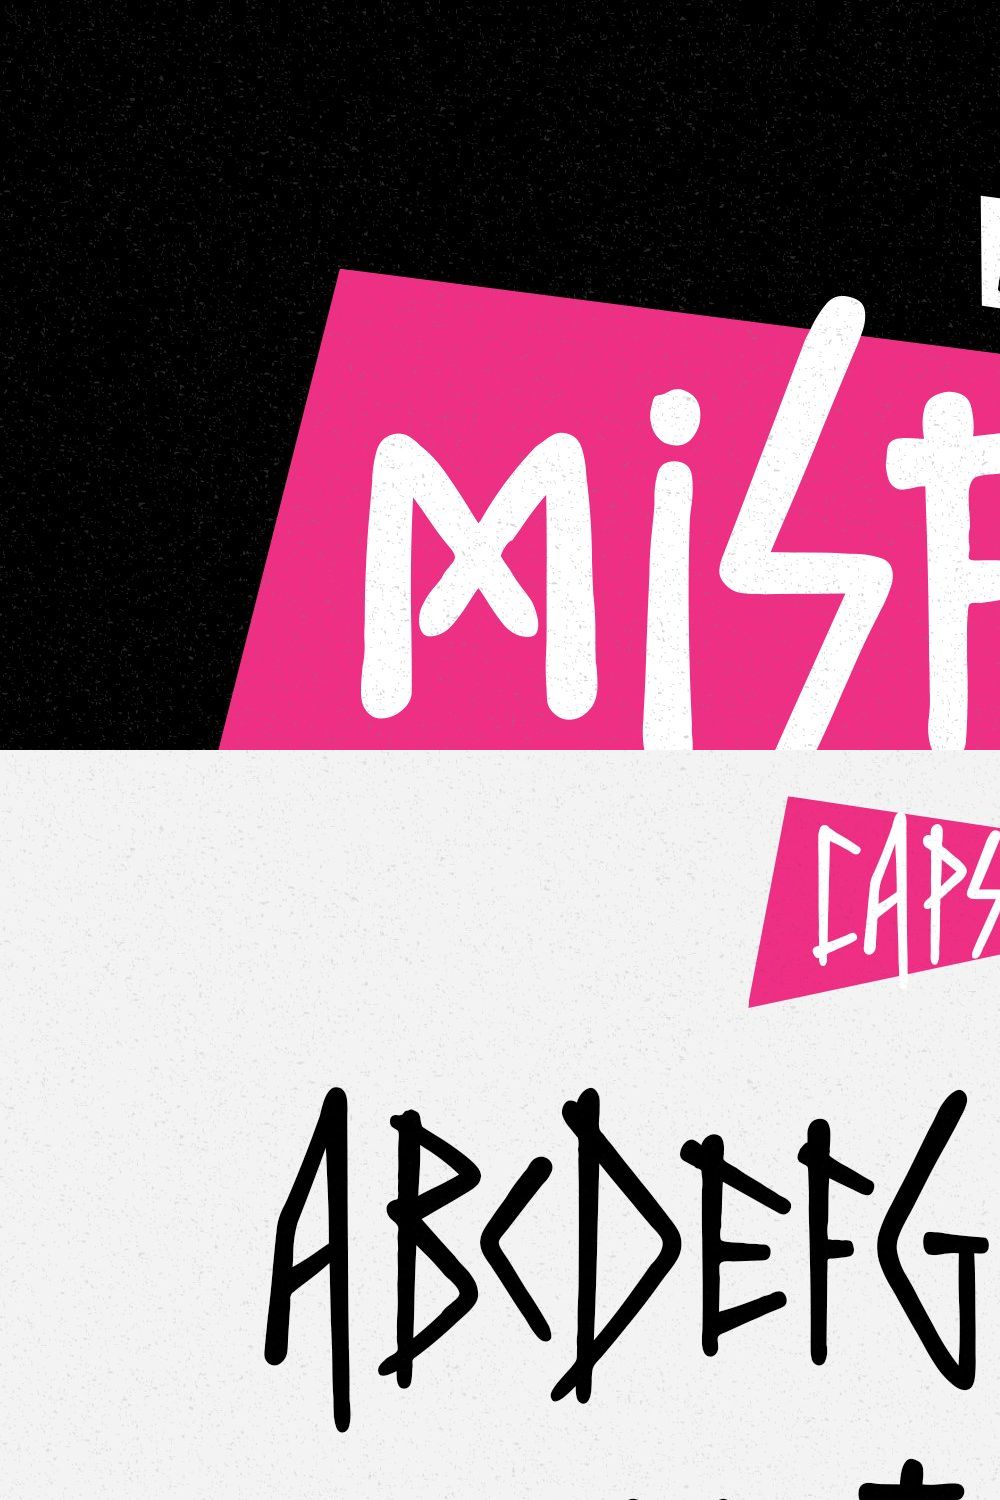 Misfit - Punk Typeface pinterest preview image.